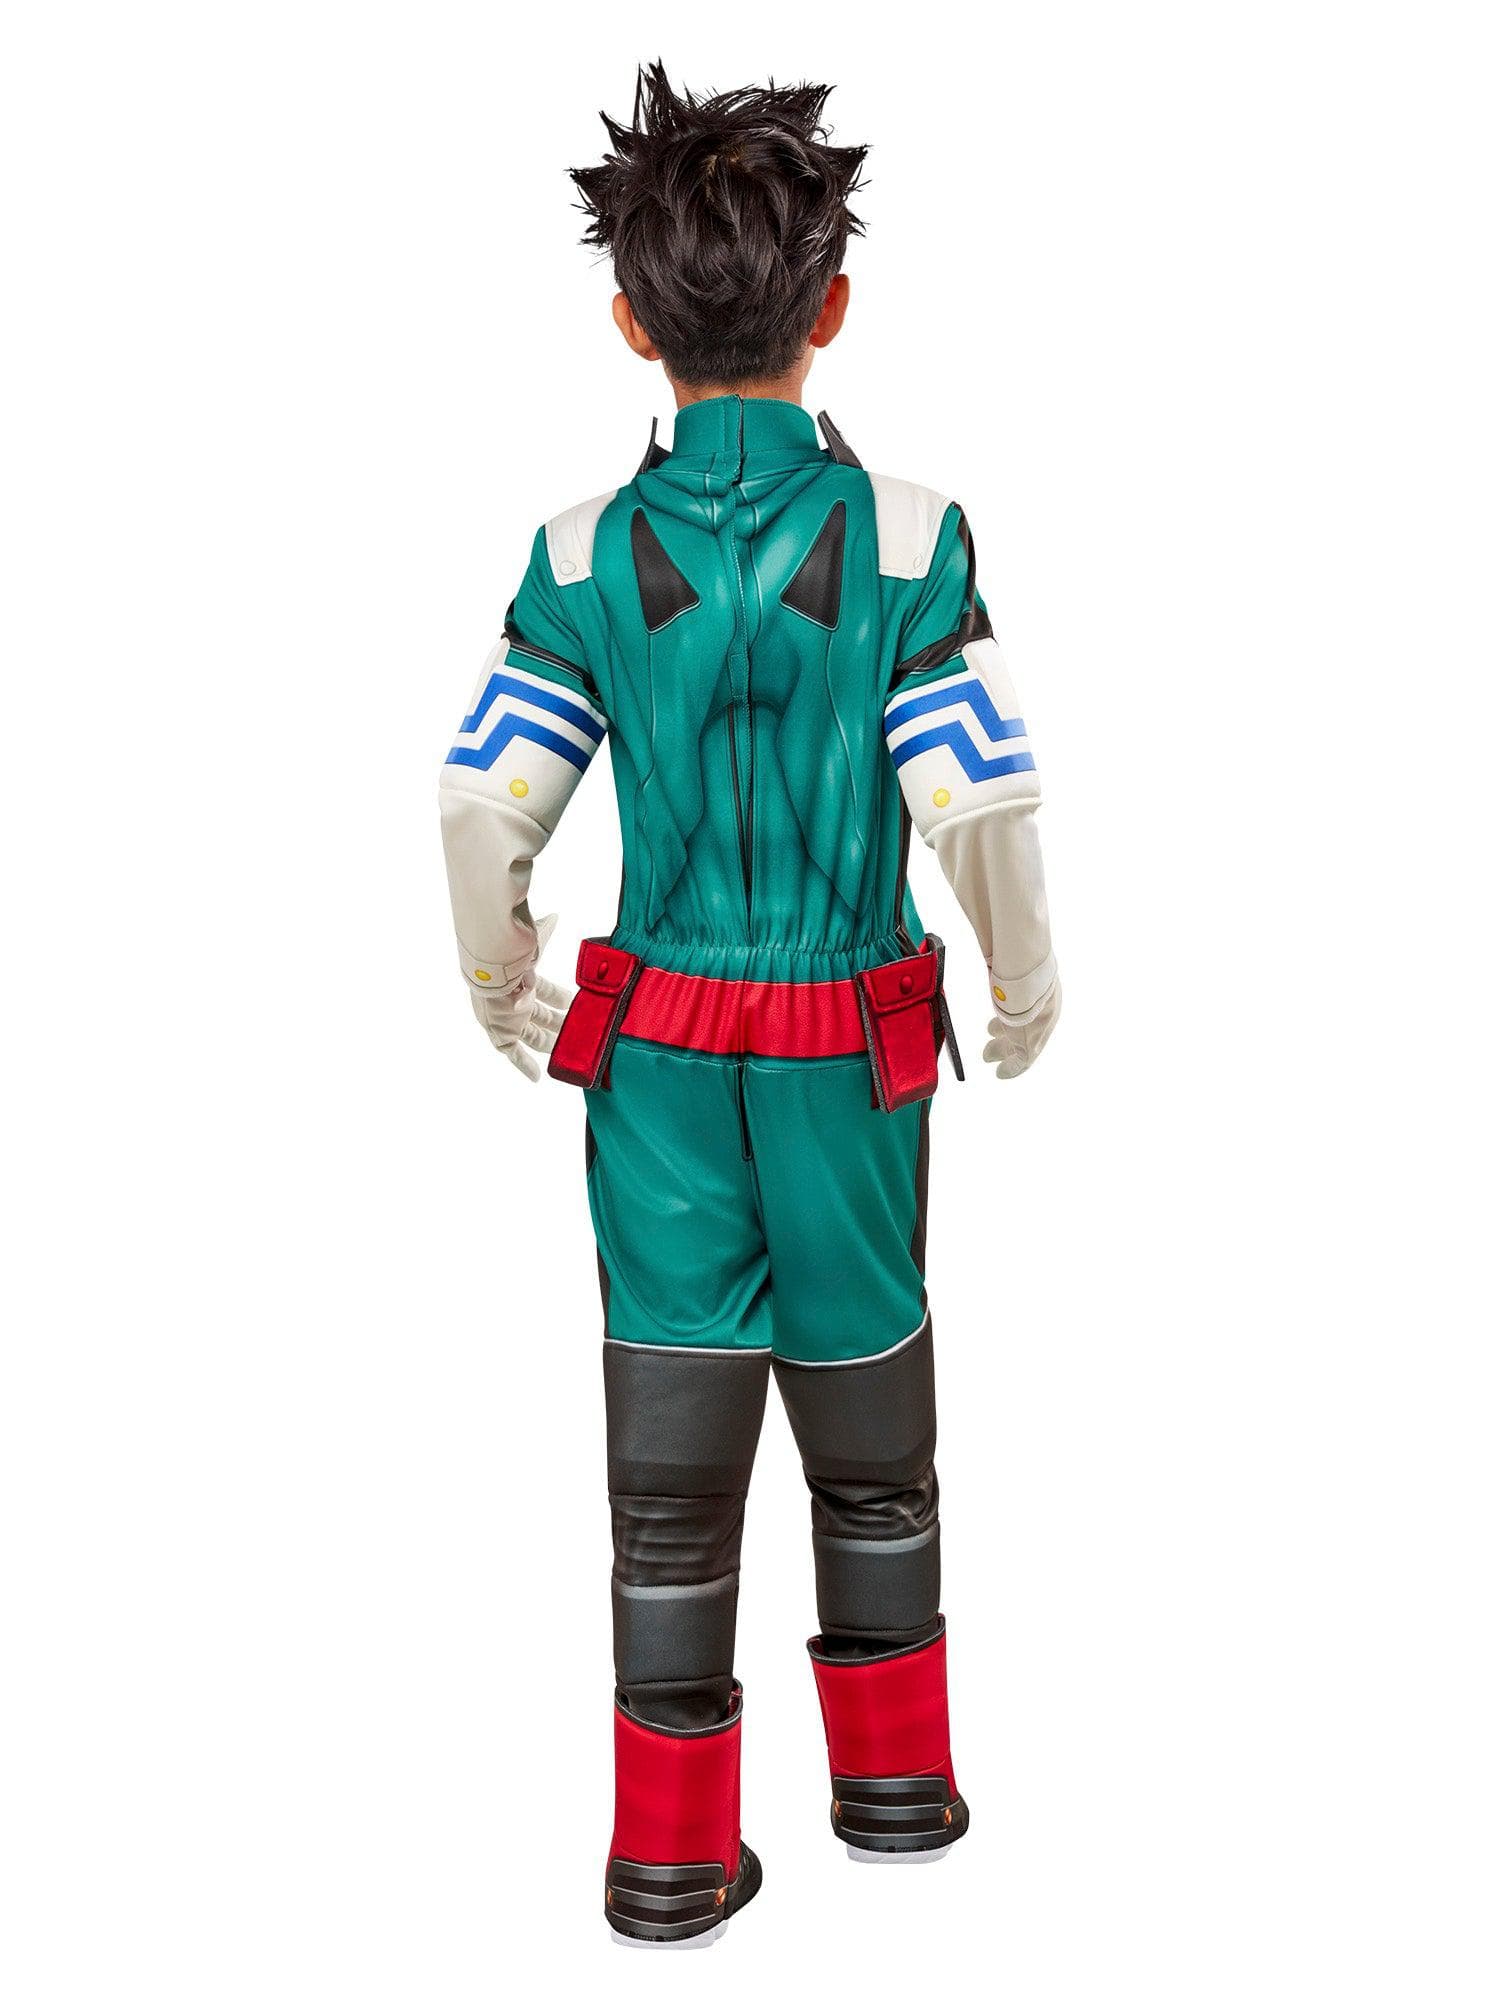 My Hero Academia Izuku Midoriya Kids Deluxe Costume - costumes.com